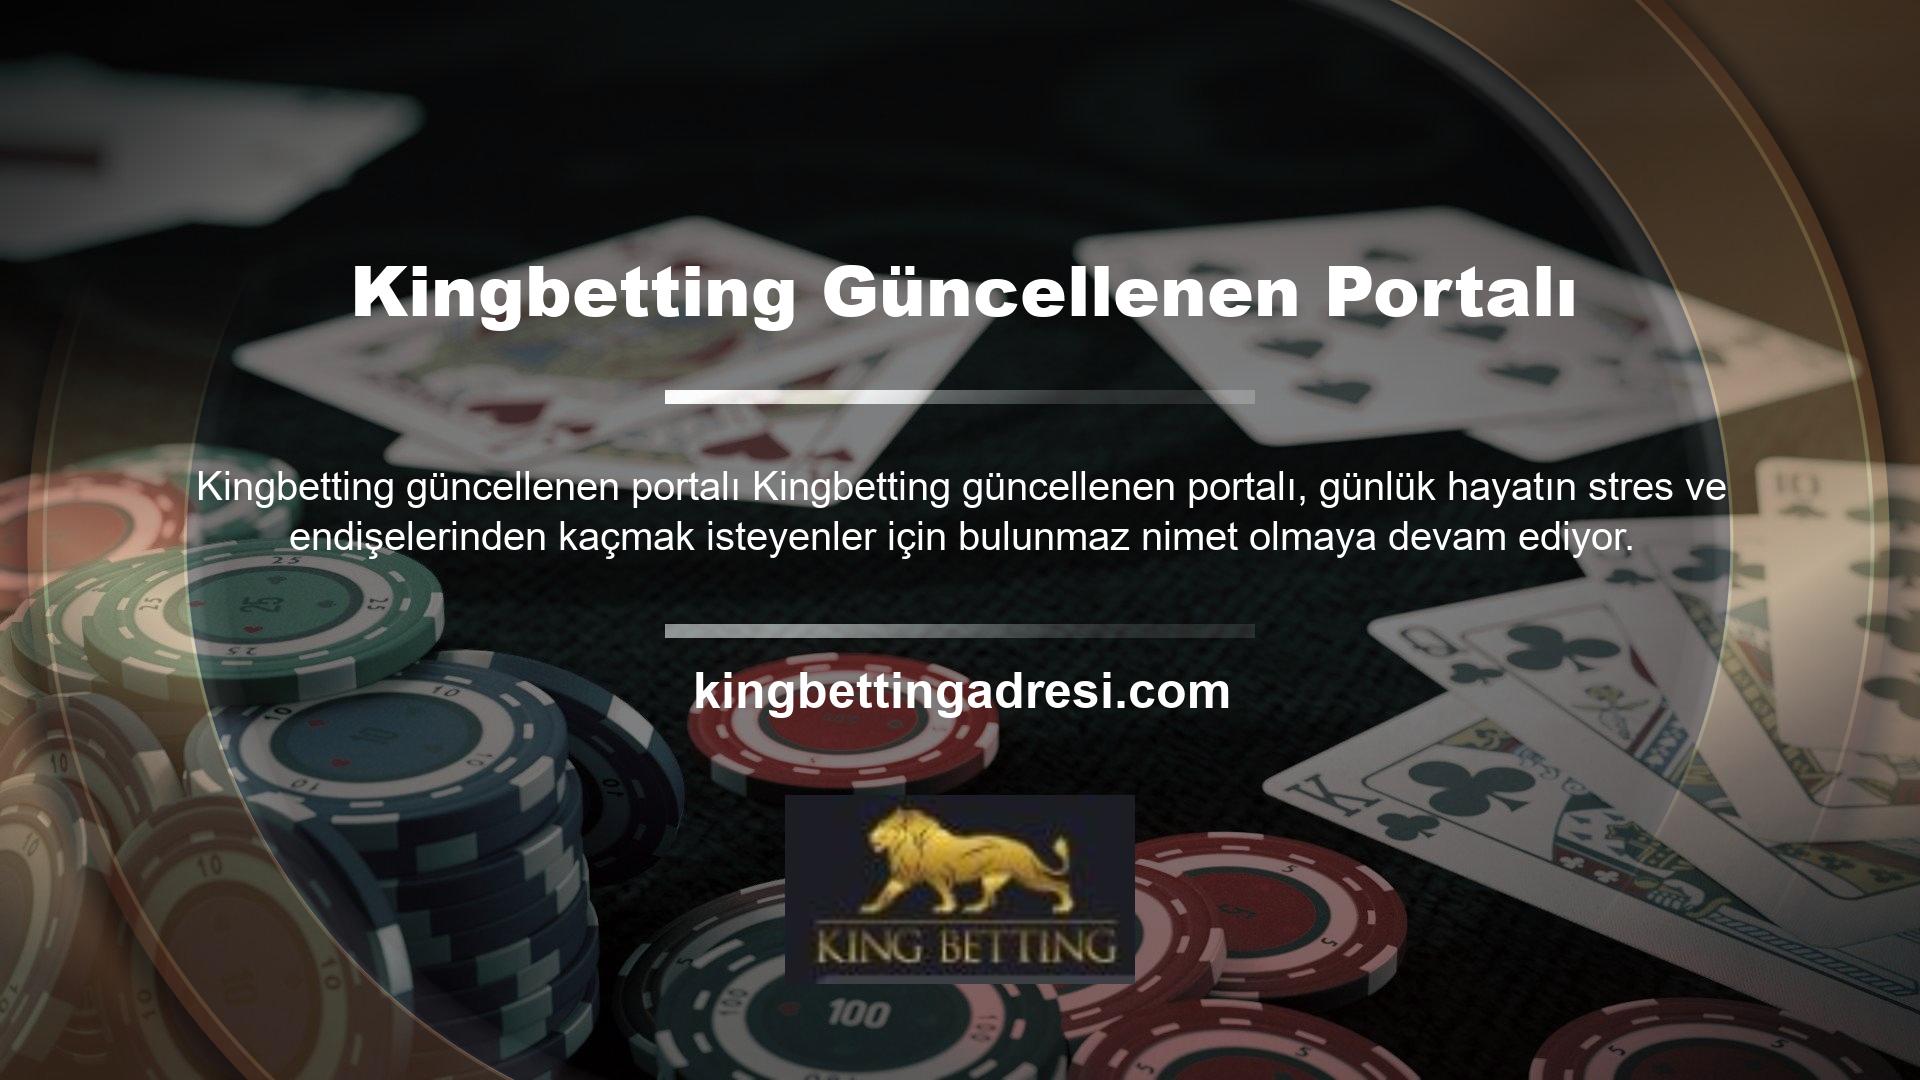 Kingbetting Casino sitesi oldukça kaliteli içerikler sunmakta ve birçok kişi sadece eğlenerek para kazanabilmektedir